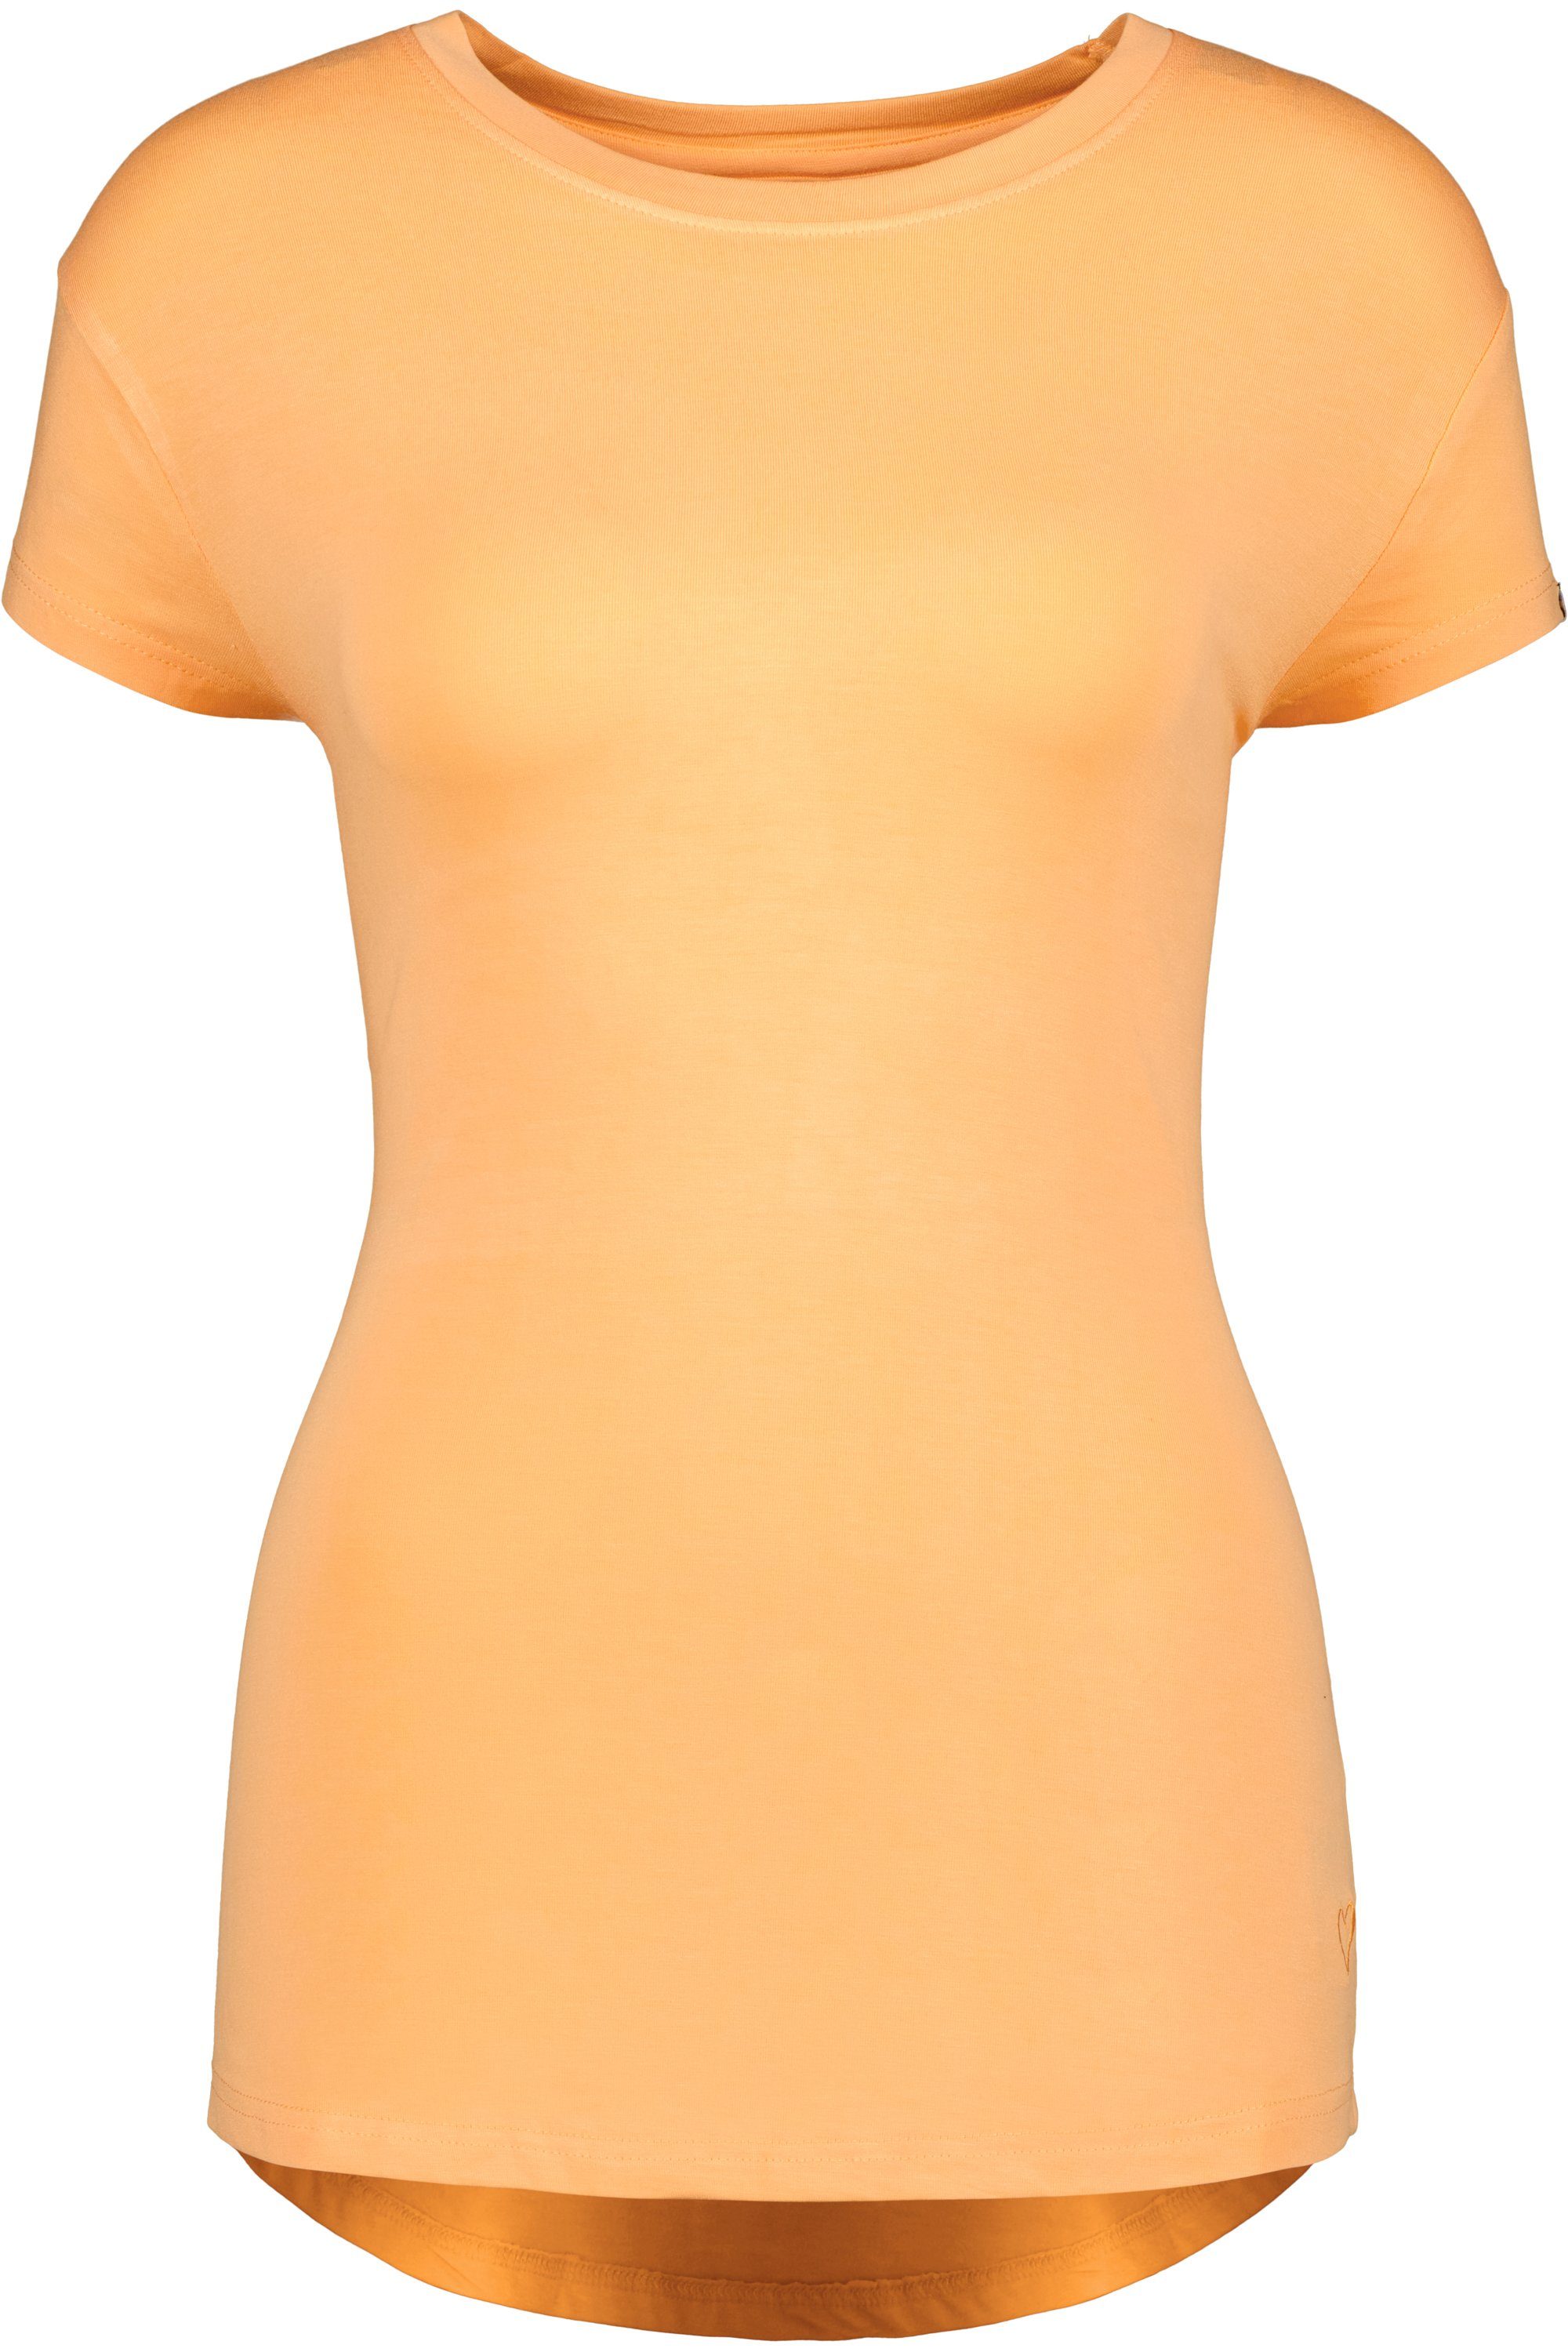 Alife & Rundhalsshirt MimmyAK Shirt Damen tangerine A Shirt Kurzarmshirt, Kickin